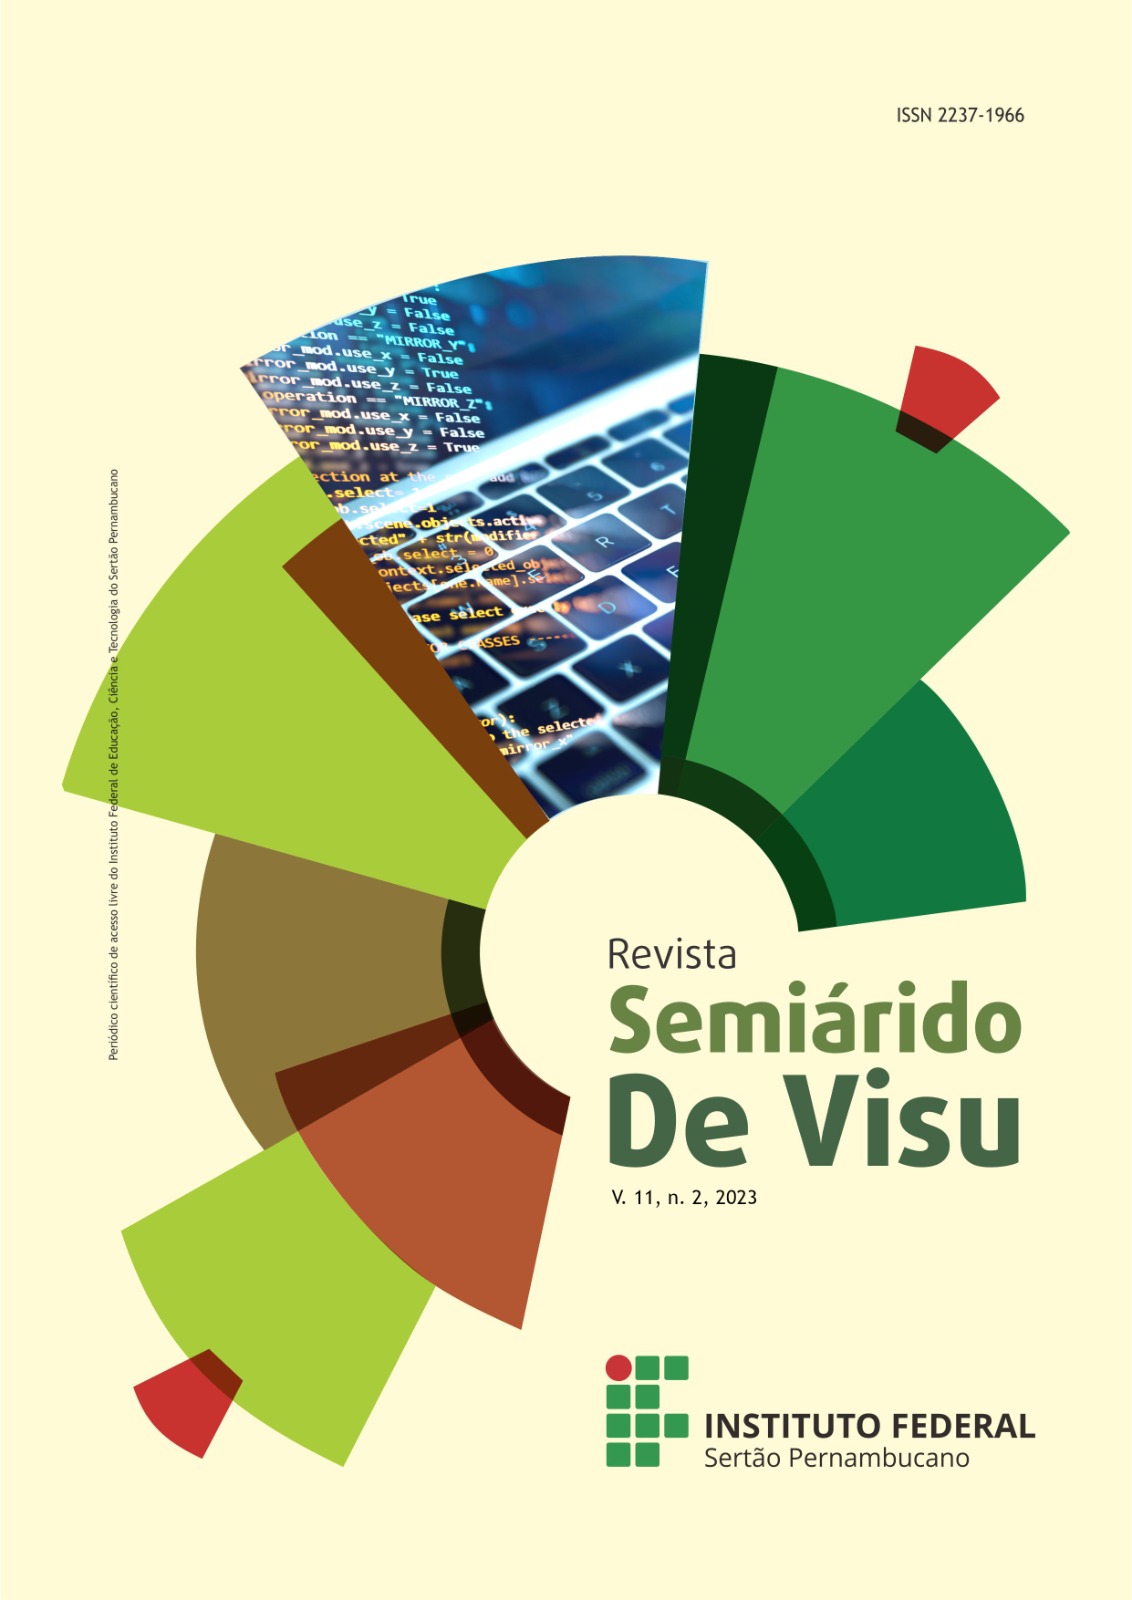 					Visualizar v. 11 n. 2 (2023): Revista Semiárido De Visu - v. 11, n. 2, 2023
				